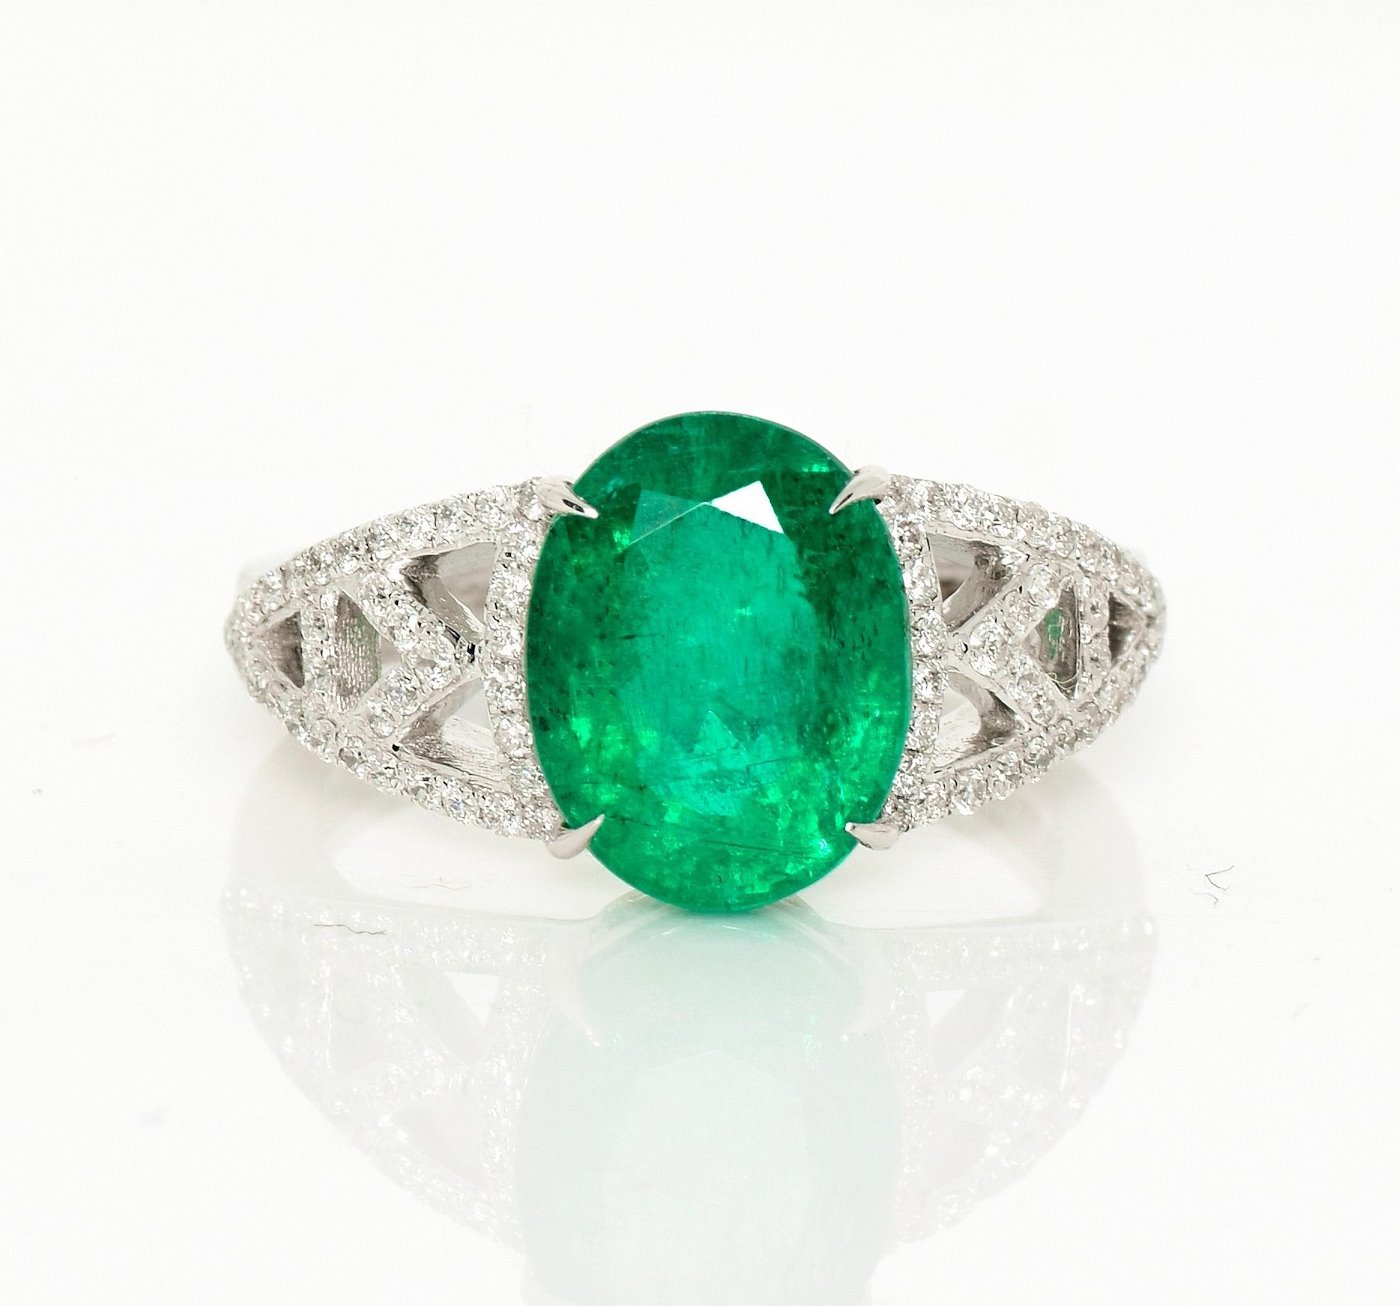 .. - Luxusní prsten s 3,51 ct smaragdem a 0,33 ct diamanty, bílé zlato 585/1000, značeno platnou puncovní značkou "labuť", hrubá hmotnost 4,99 g